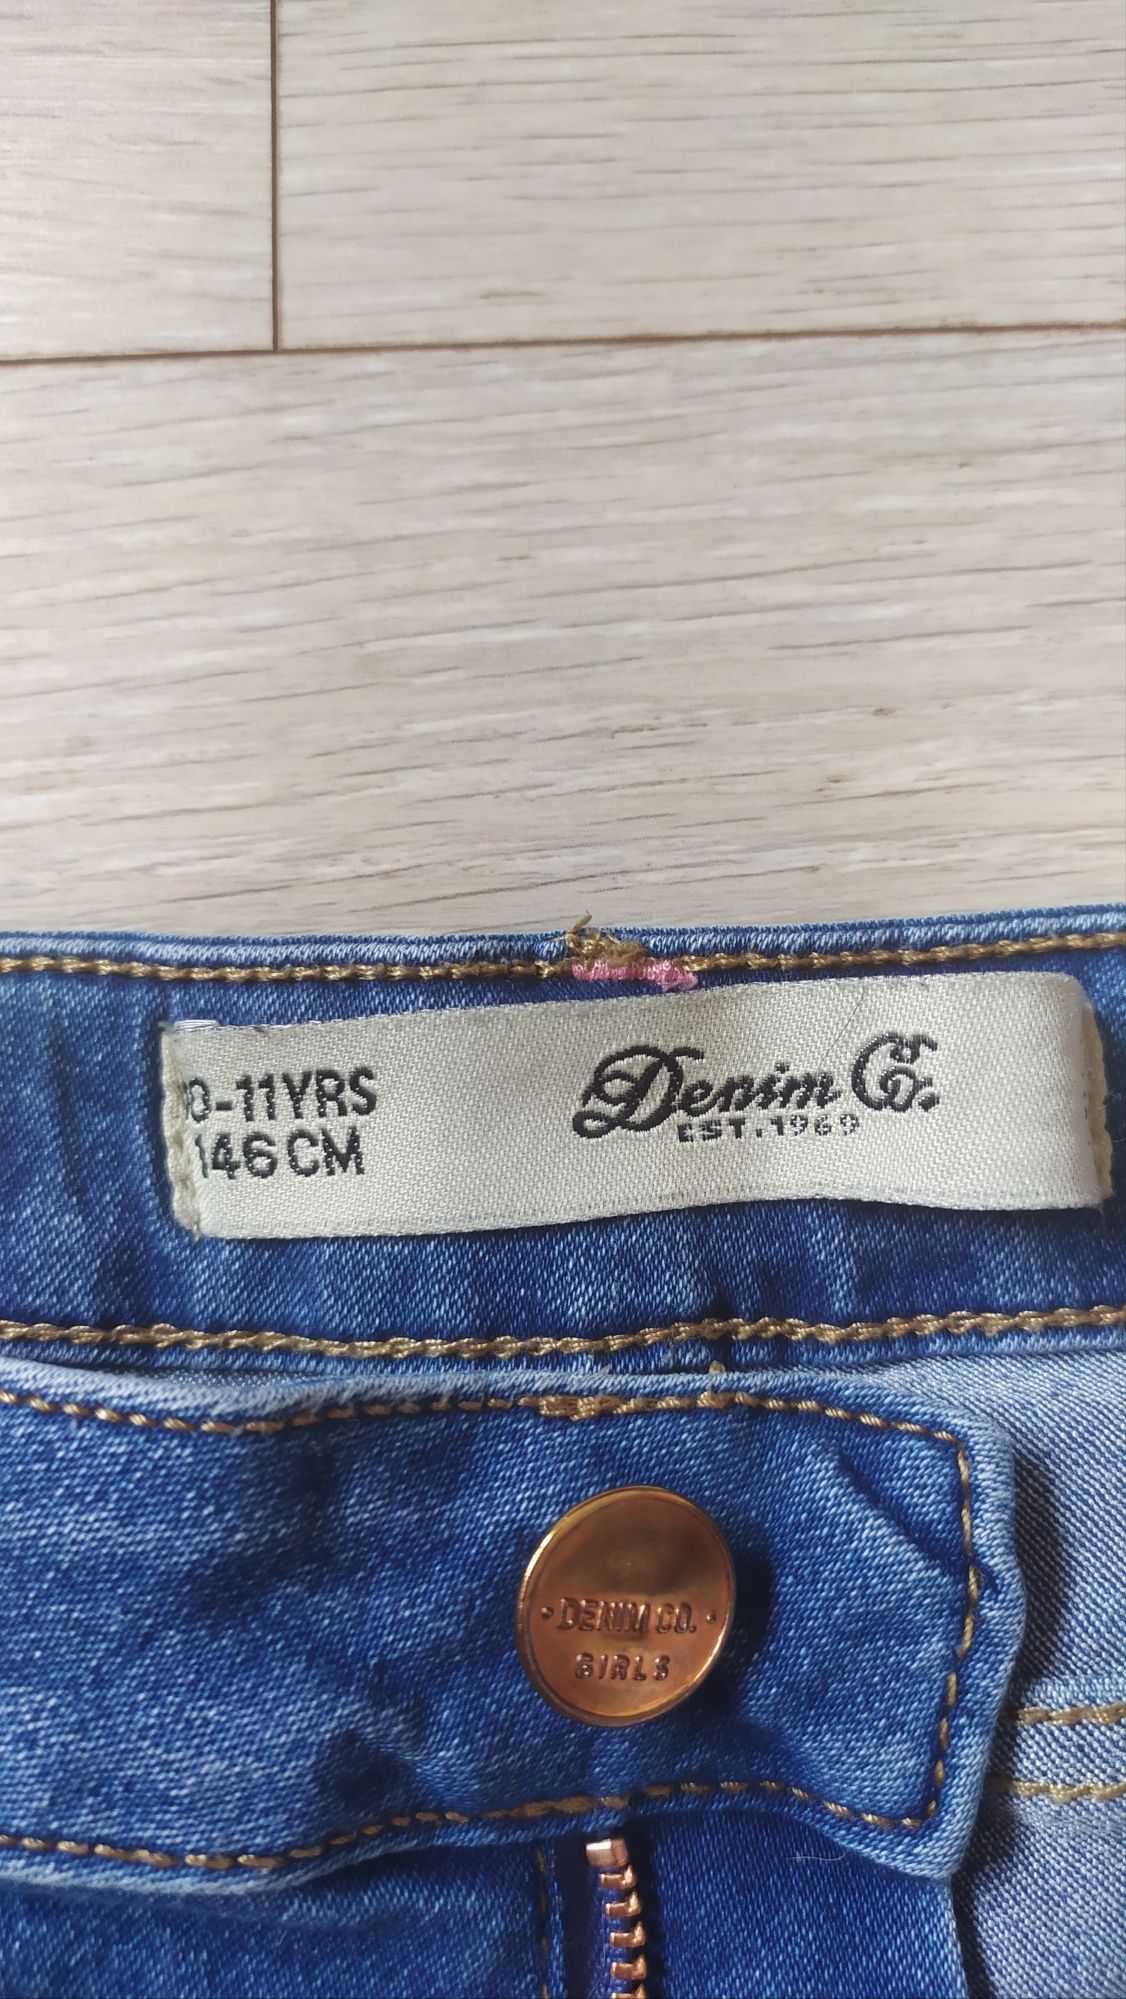 Spodenki jeansowe krótkie rozmiar 146 dla dziewczynki